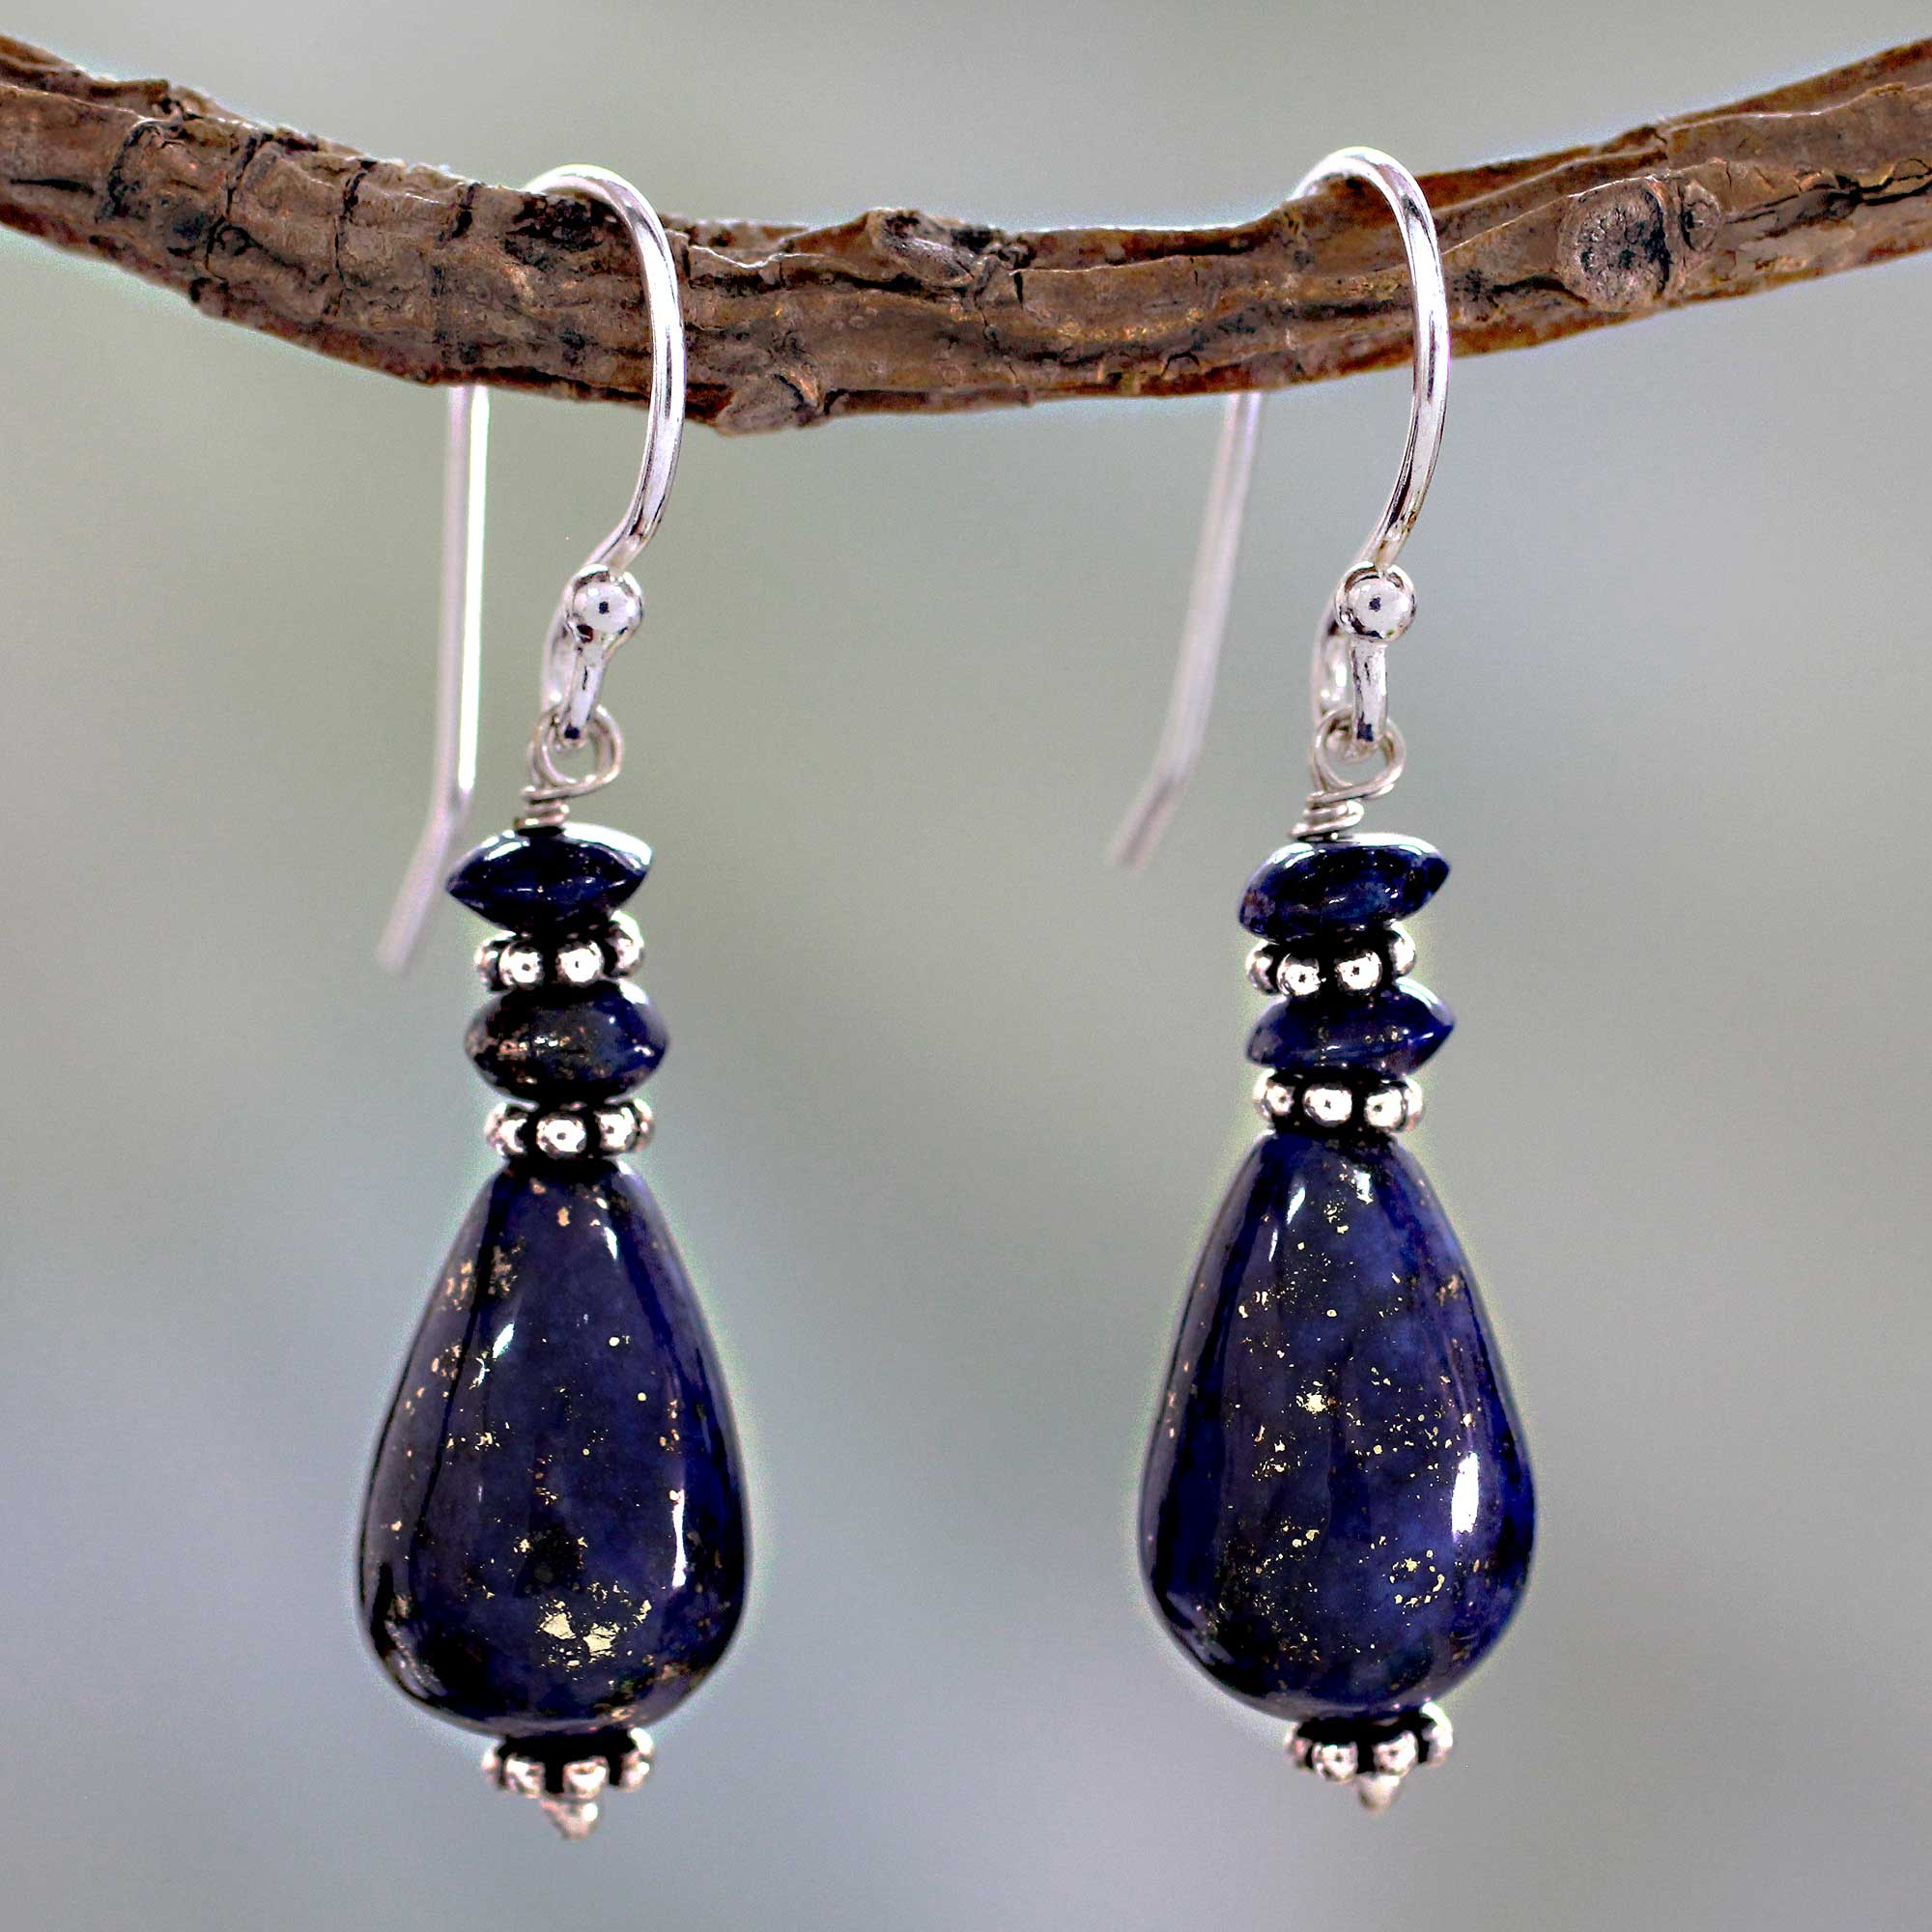 Fair Trade Sterling Silver and Lapis Lazuli Earrings - Delhi Dusk | NOVICA